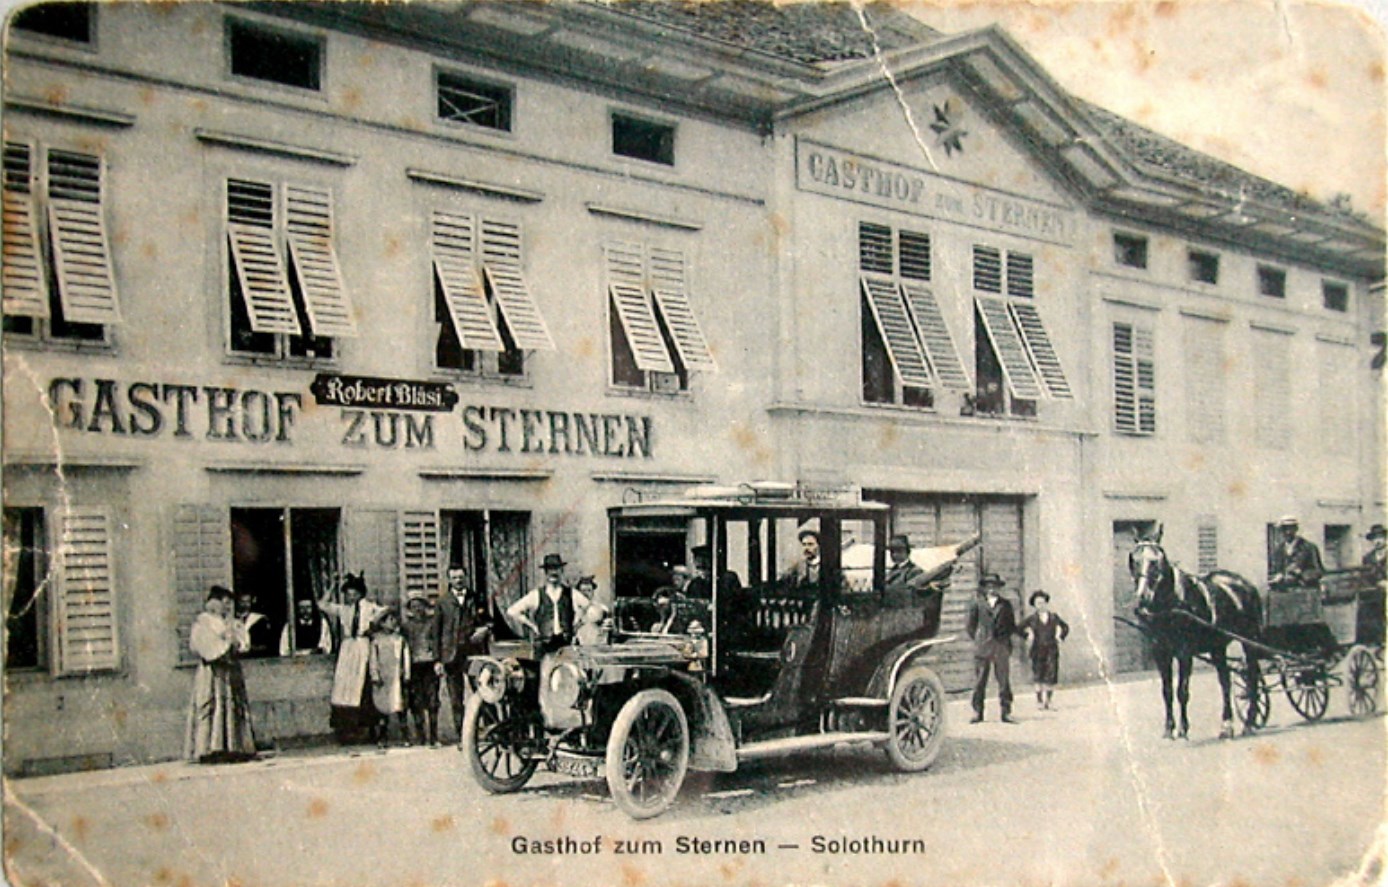 Sternen Solothurn Restaurant & Pizzeria